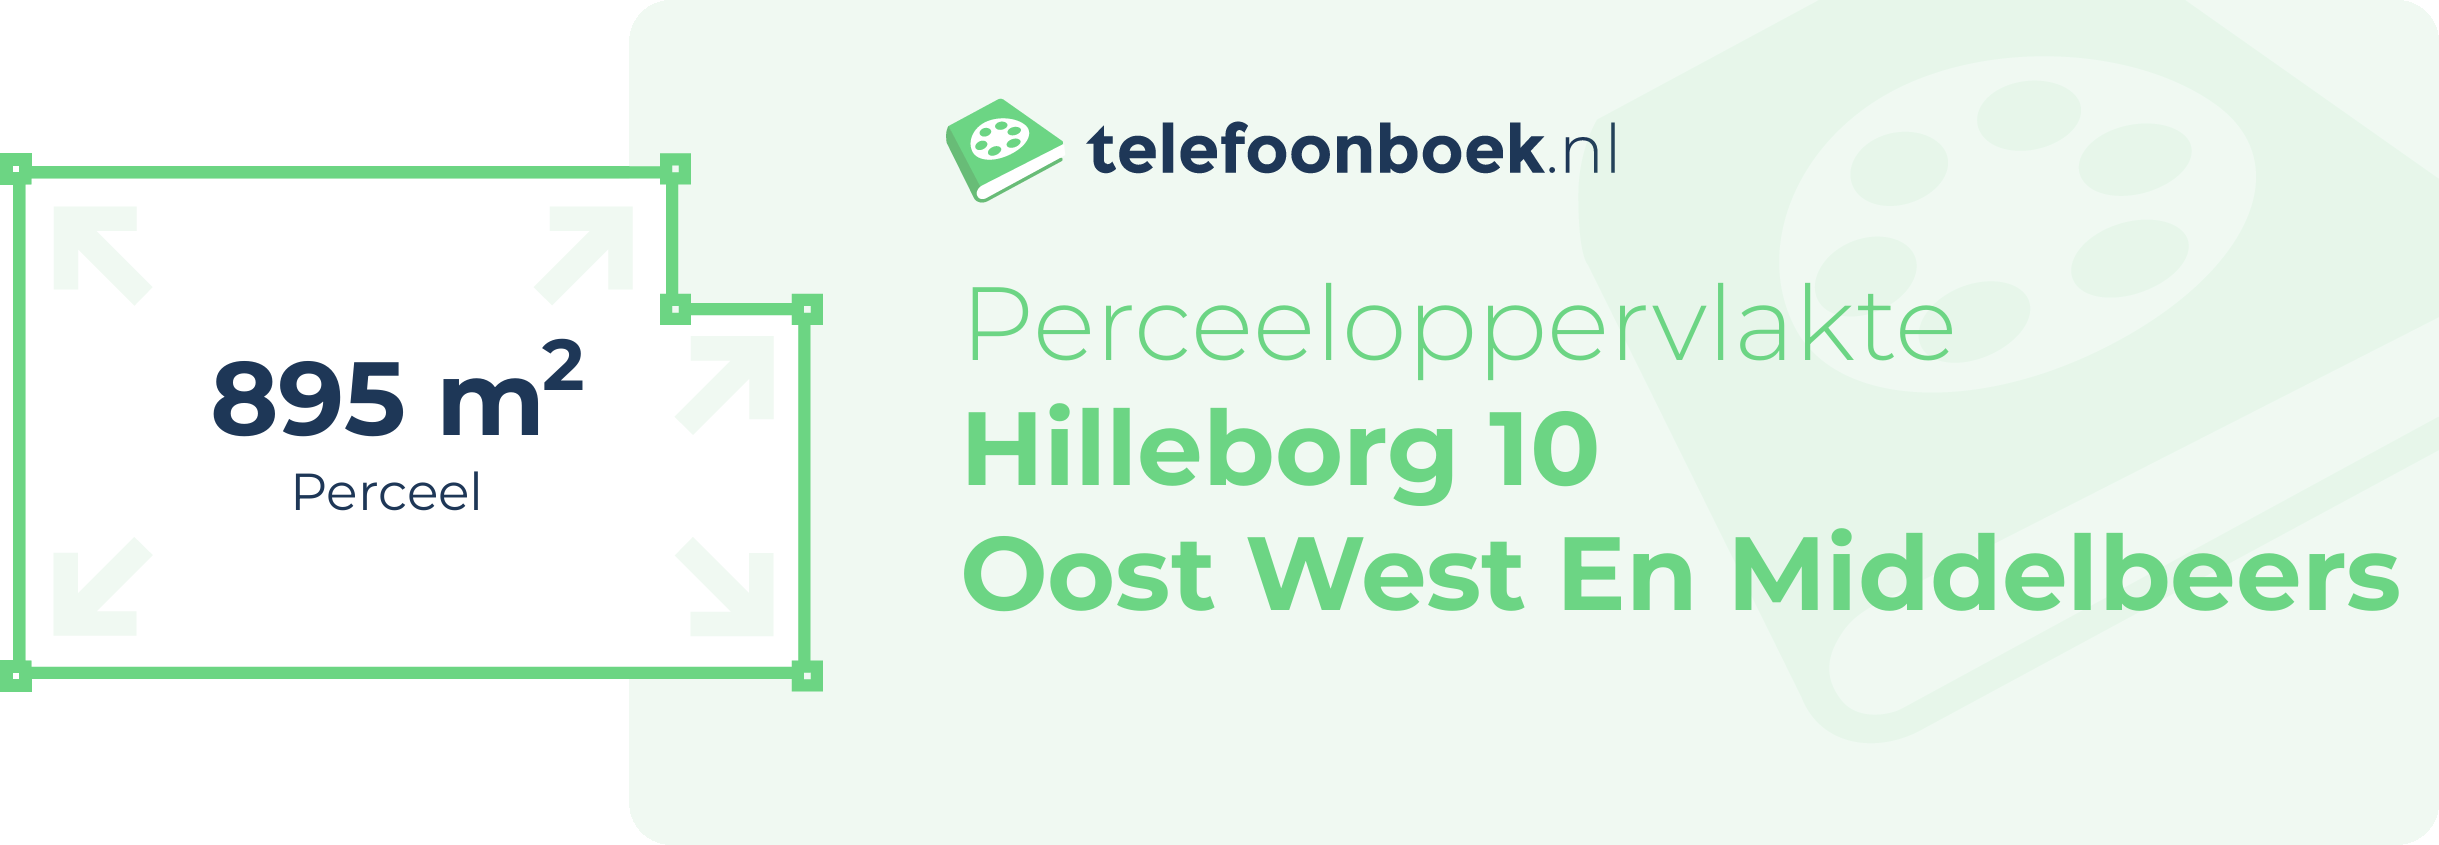 Perceeloppervlakte Hilleborg 10 Oost West En Middelbeers